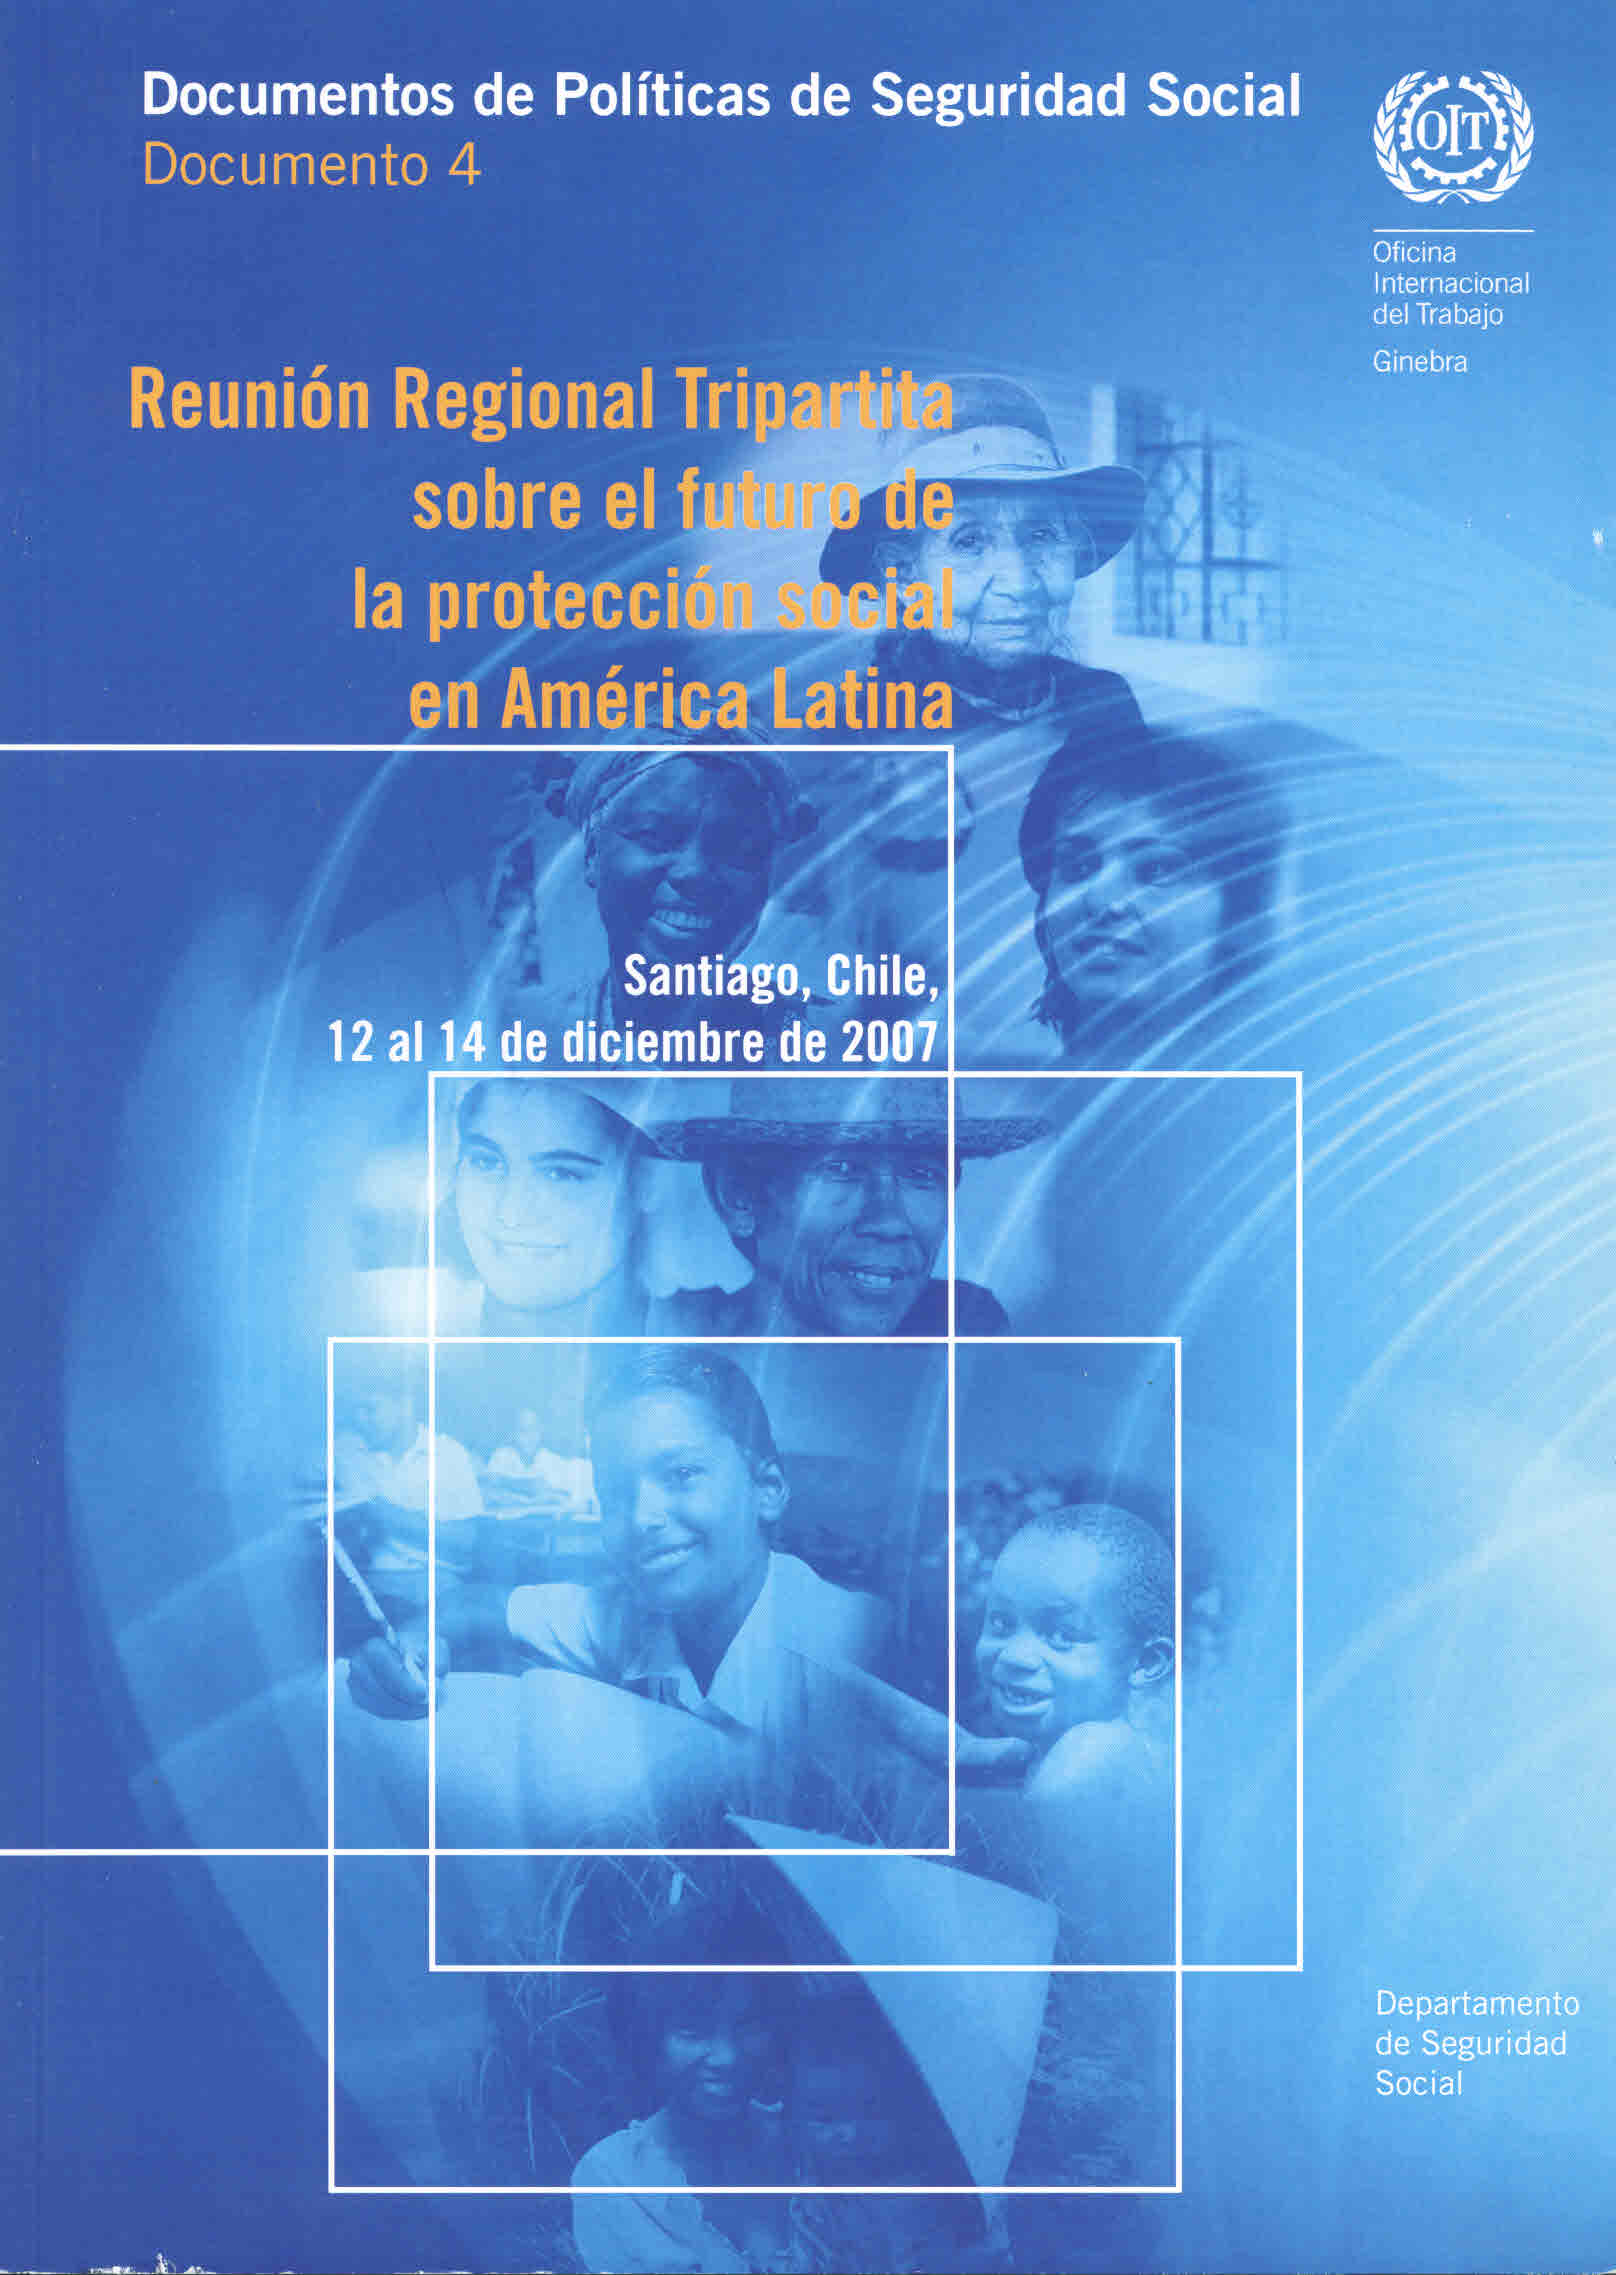 Reunión regional tripartita sobre el futuro de la protección social en América Latina. Santiago, Chile, 12 al 14 de Diciembre de 2007. Campaña mundial sobre seguridad social y cobertura para todos